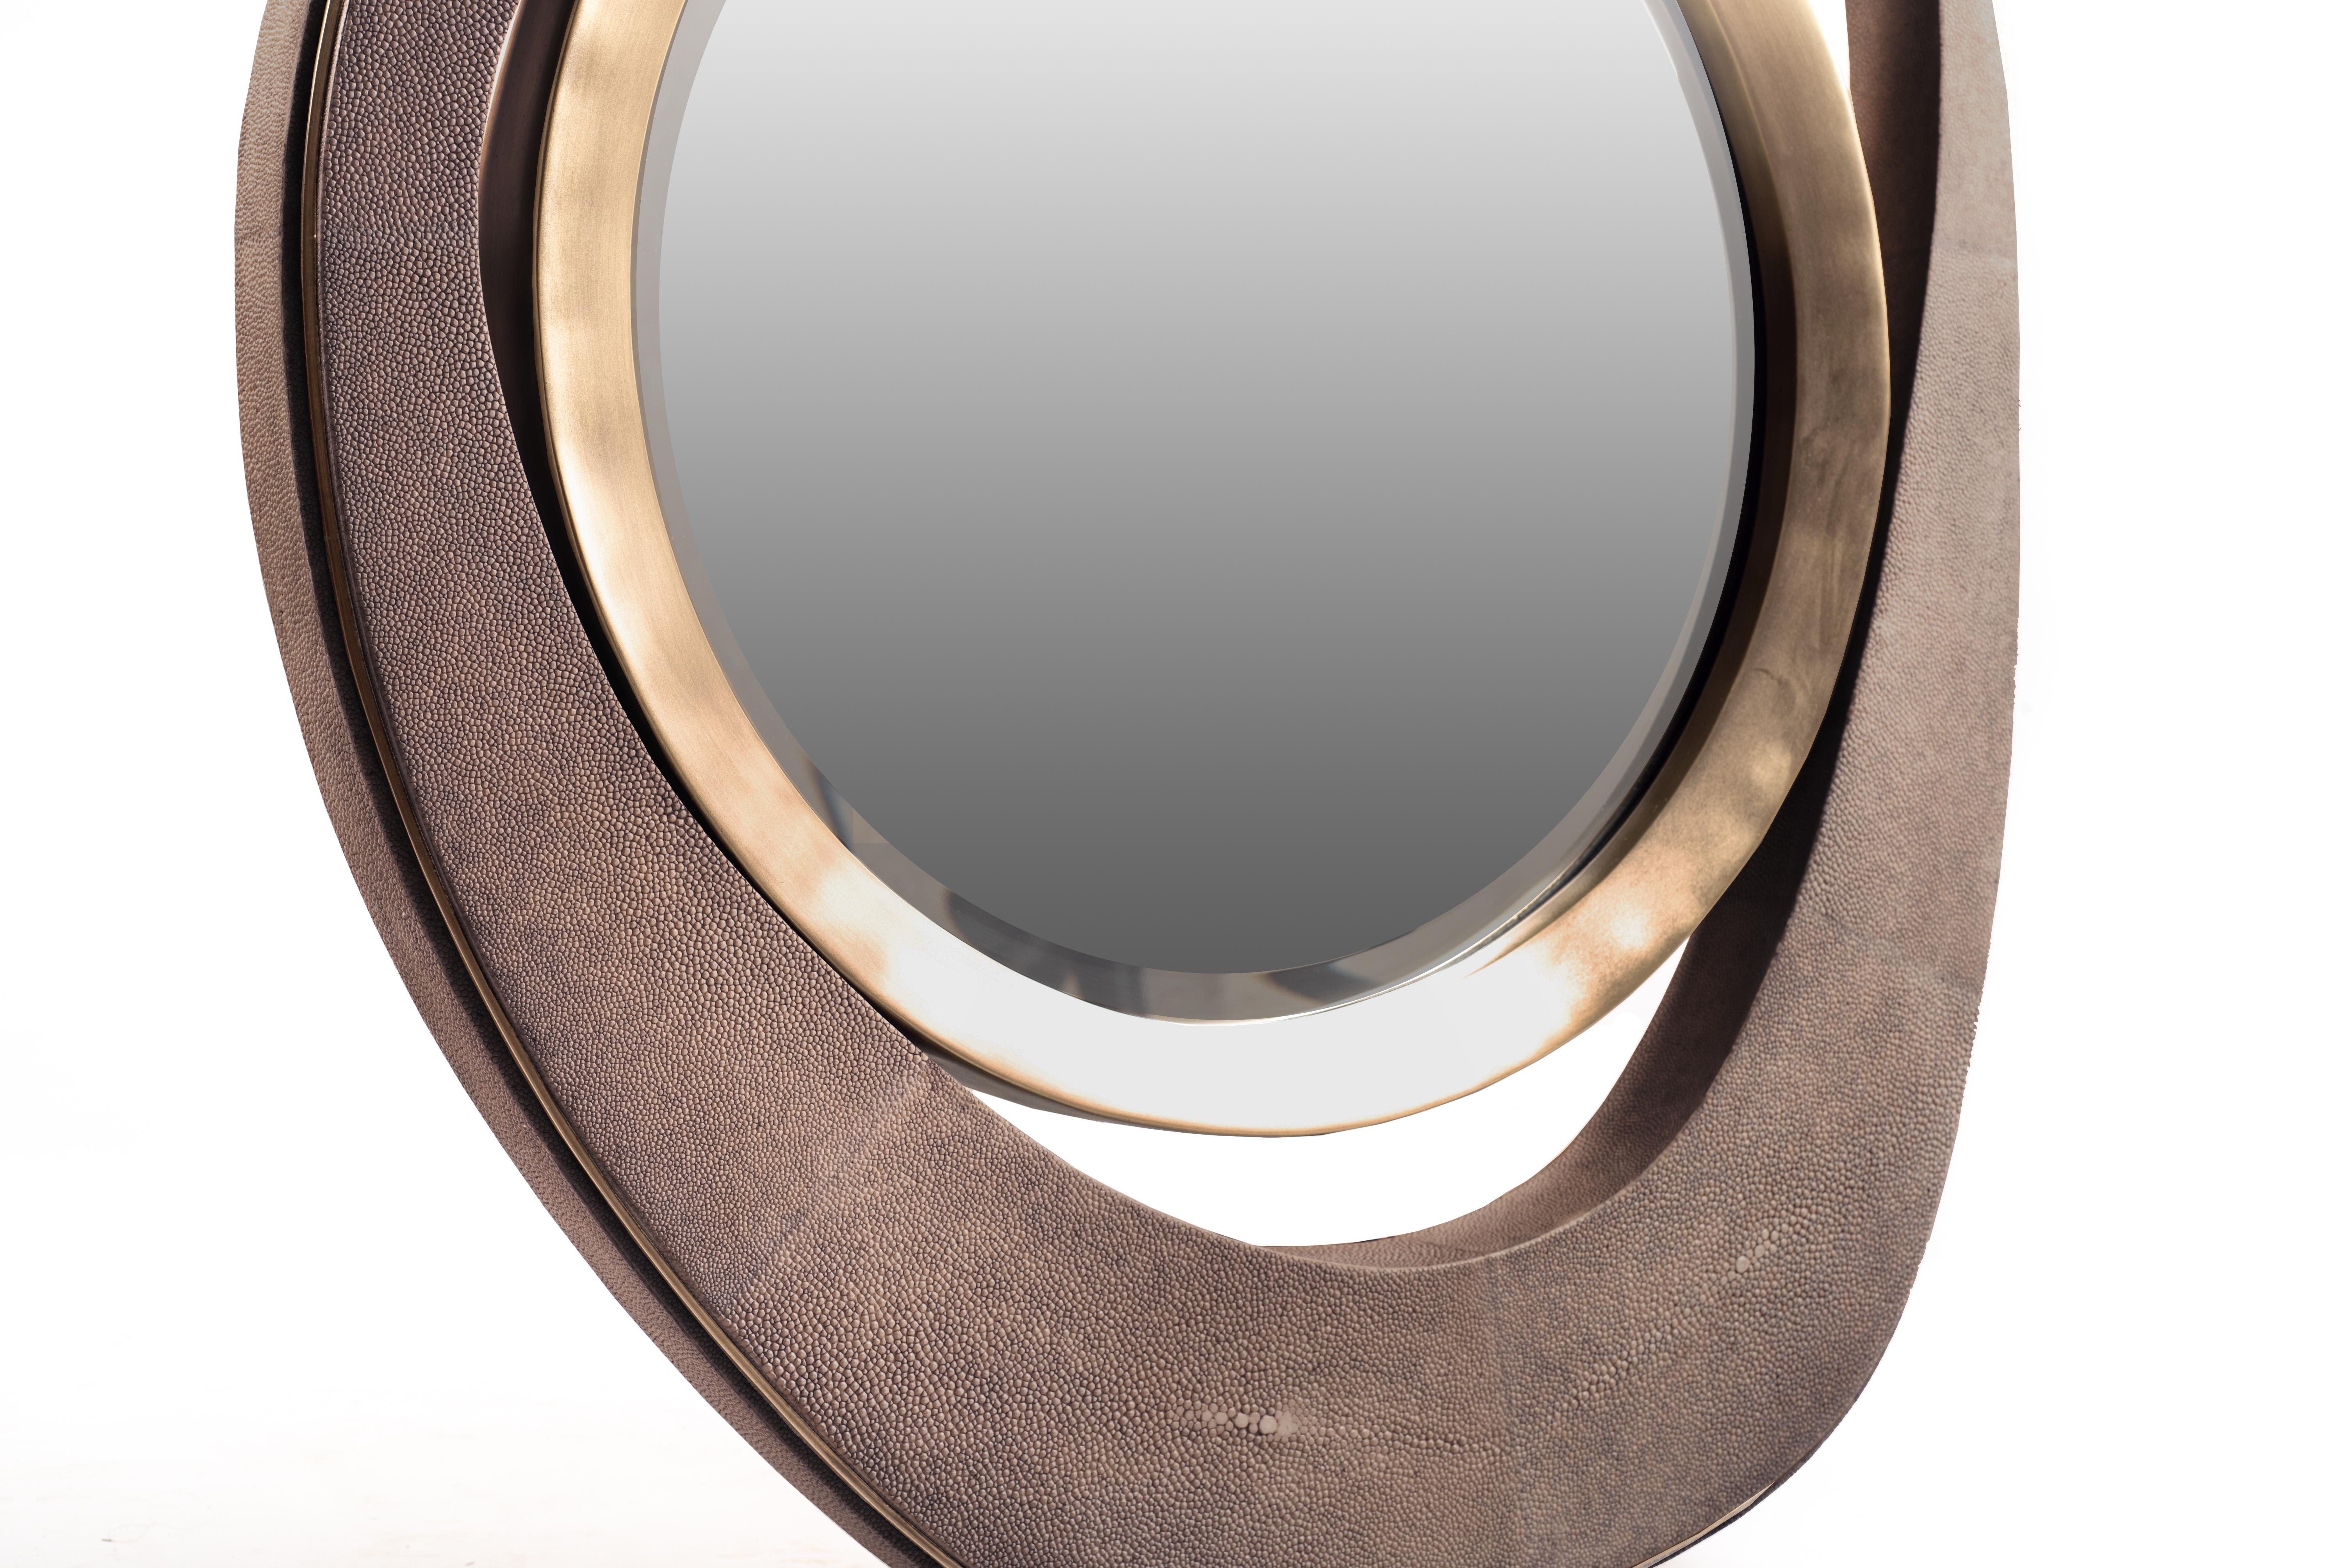 Der Pfauenspiegel aus nerzfarbenem Shagreen und Bronze-Patina-Messing-Details ist von den ikonischen Nesting-Couchtischen von R&Y Augousti inspiriert und ist das perfekte Akzentstück, um jede Wand zu verschönern. Erhältlich in einer großen Größe und